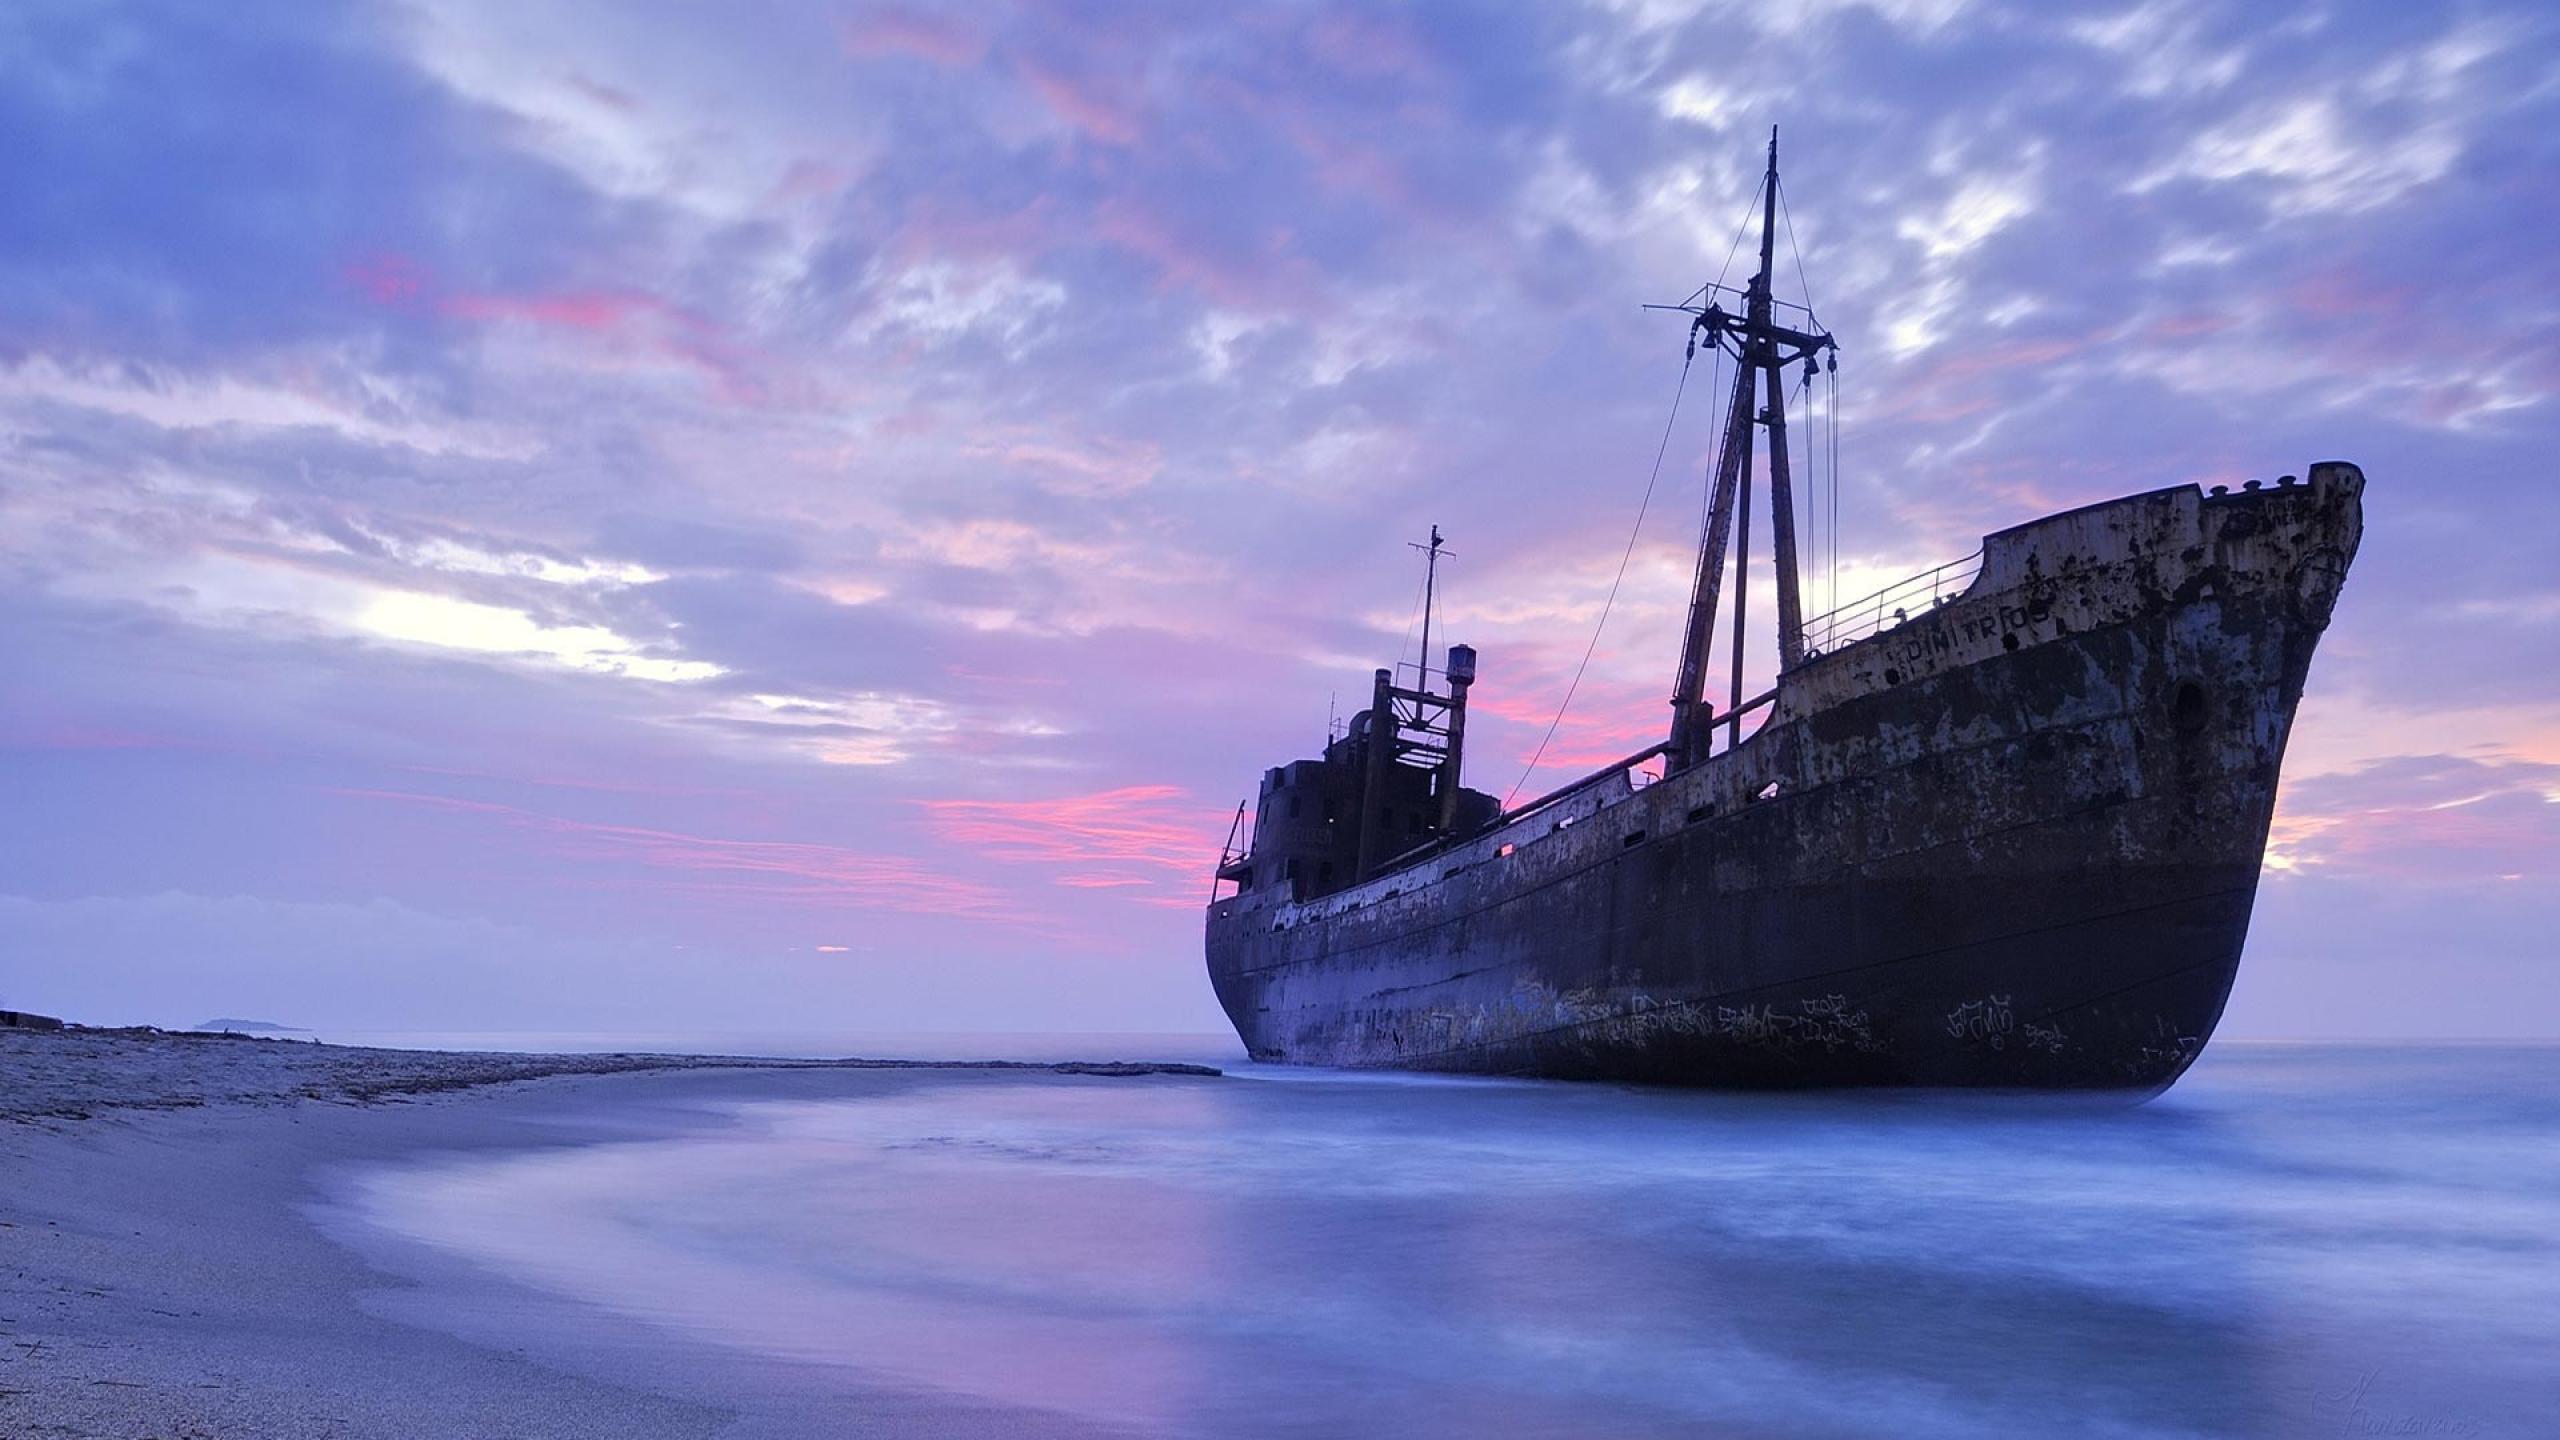 General 2560x1440 shipwreck shore sea violet clouds horizon